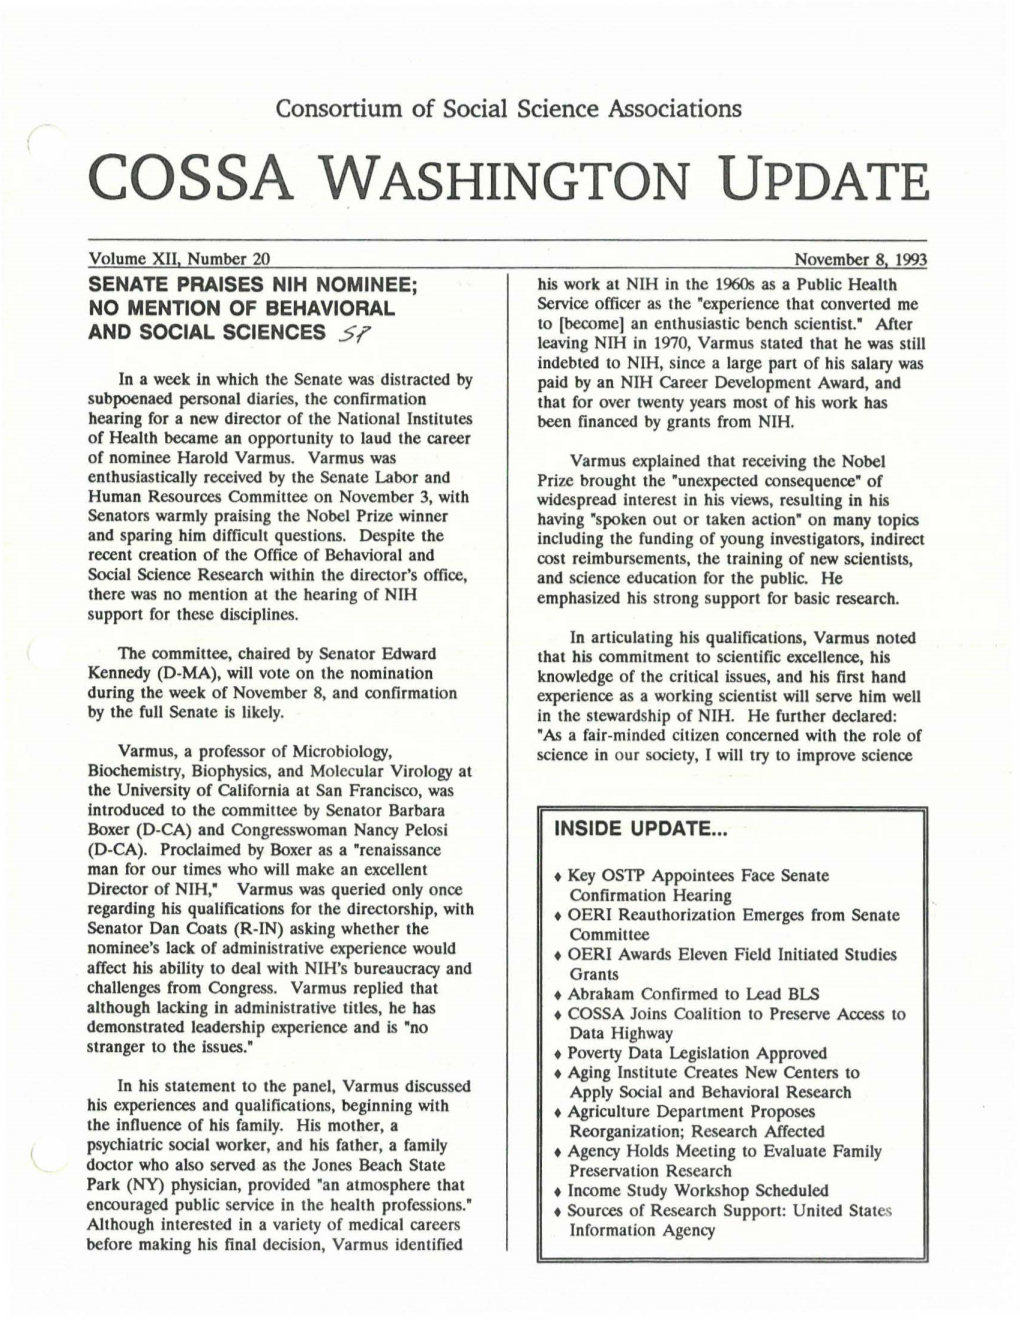 Cossa Washington Update